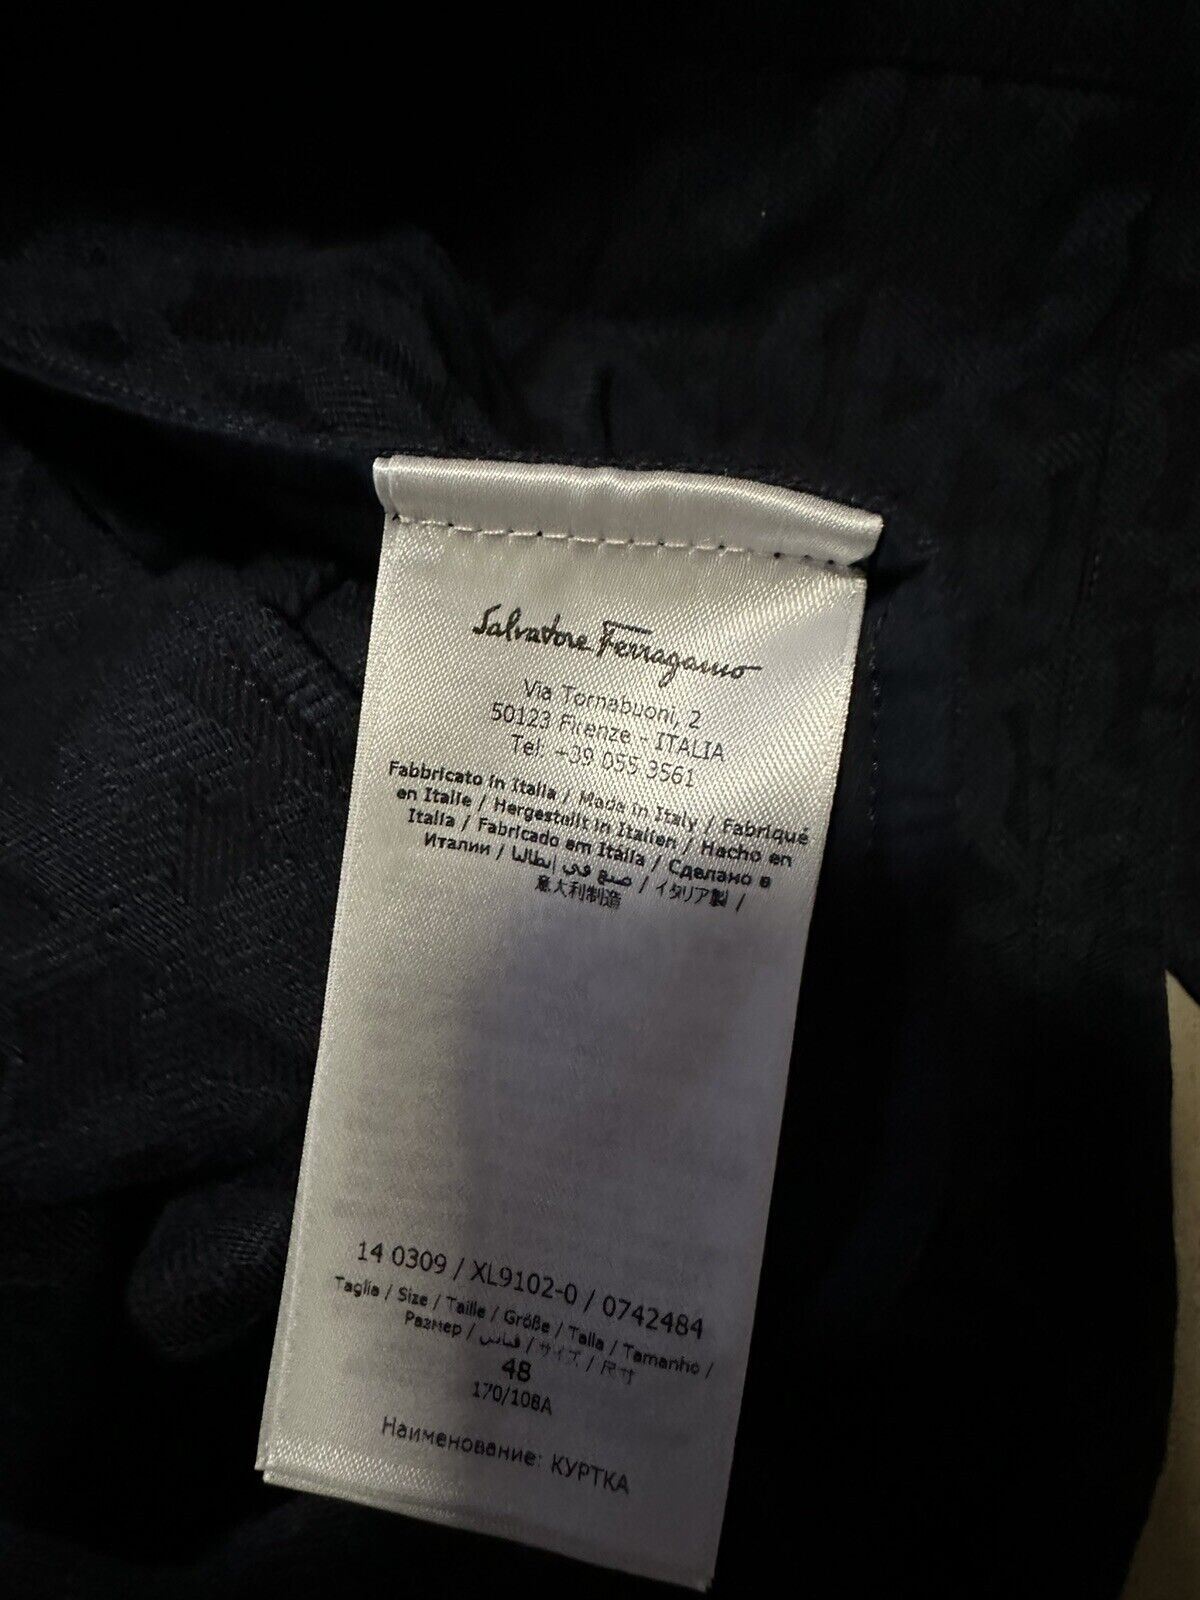 Новая мужская хлопковая/кожаная куртка Salvatore Ferragamo стоимостью 1490 долларов США, черная/синяя, 38 США/48 ЕС